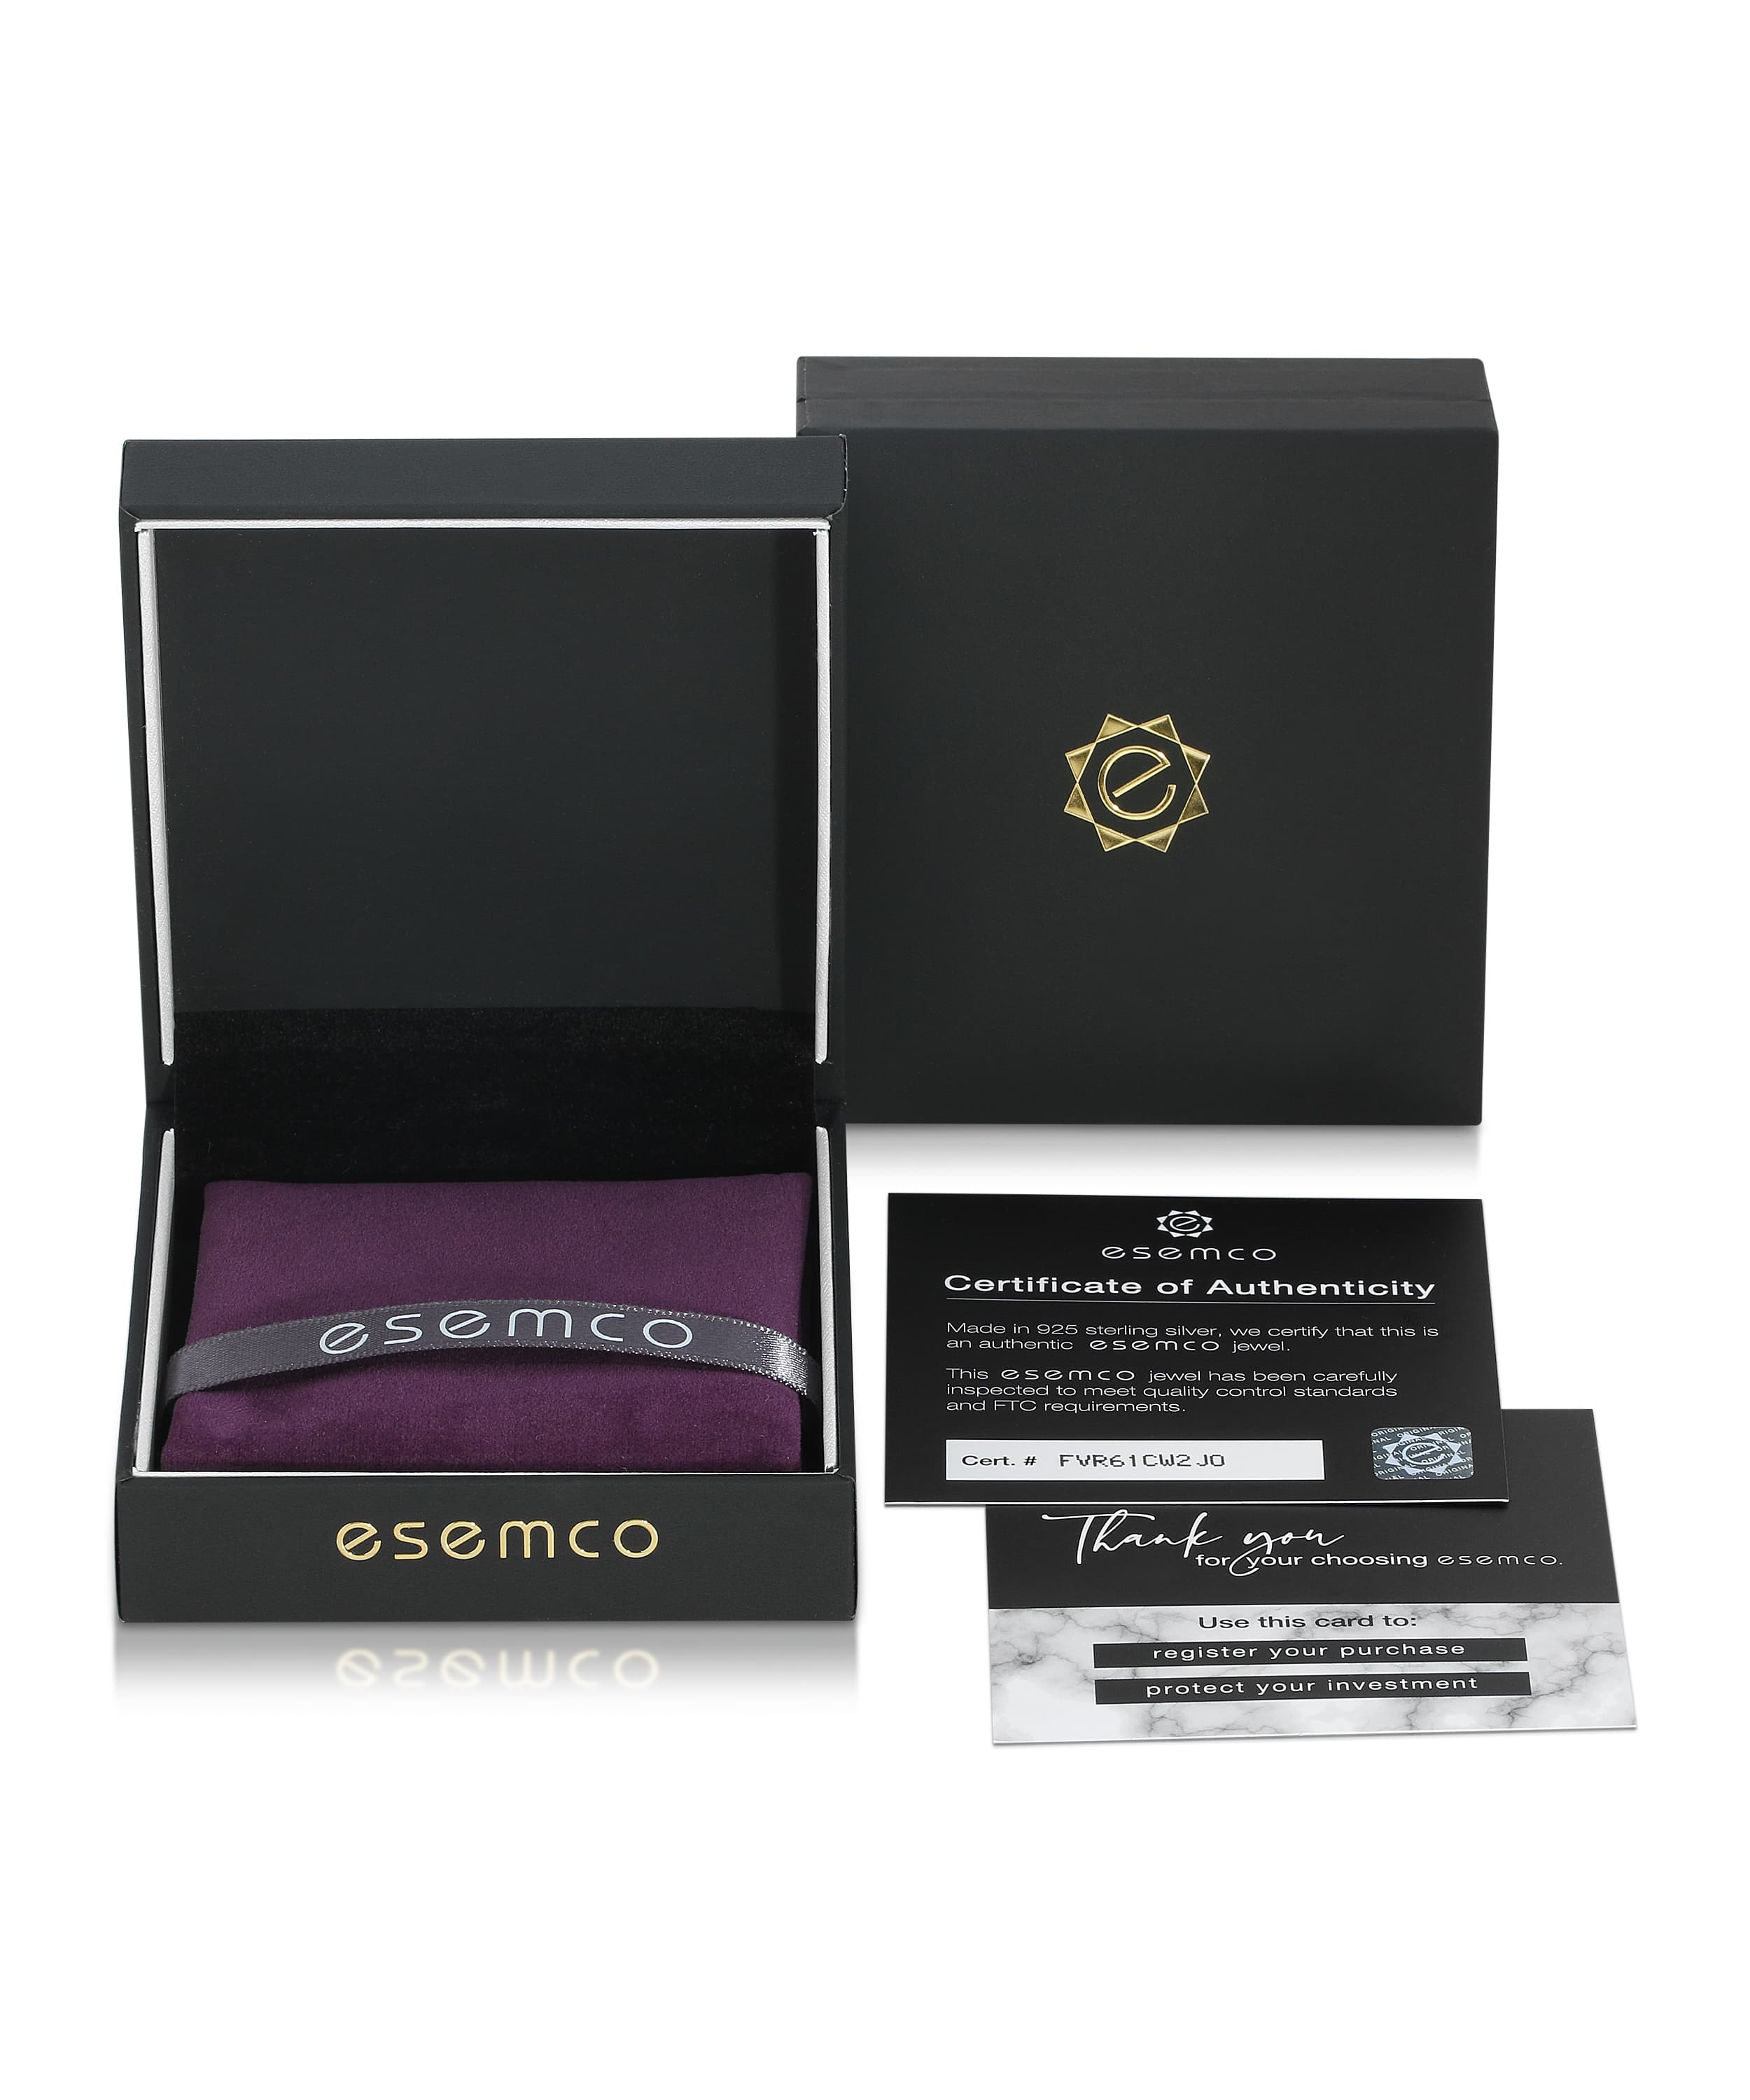 ESEMCO Diamond 18k White Gold Letter W Initial Open Ring View 4